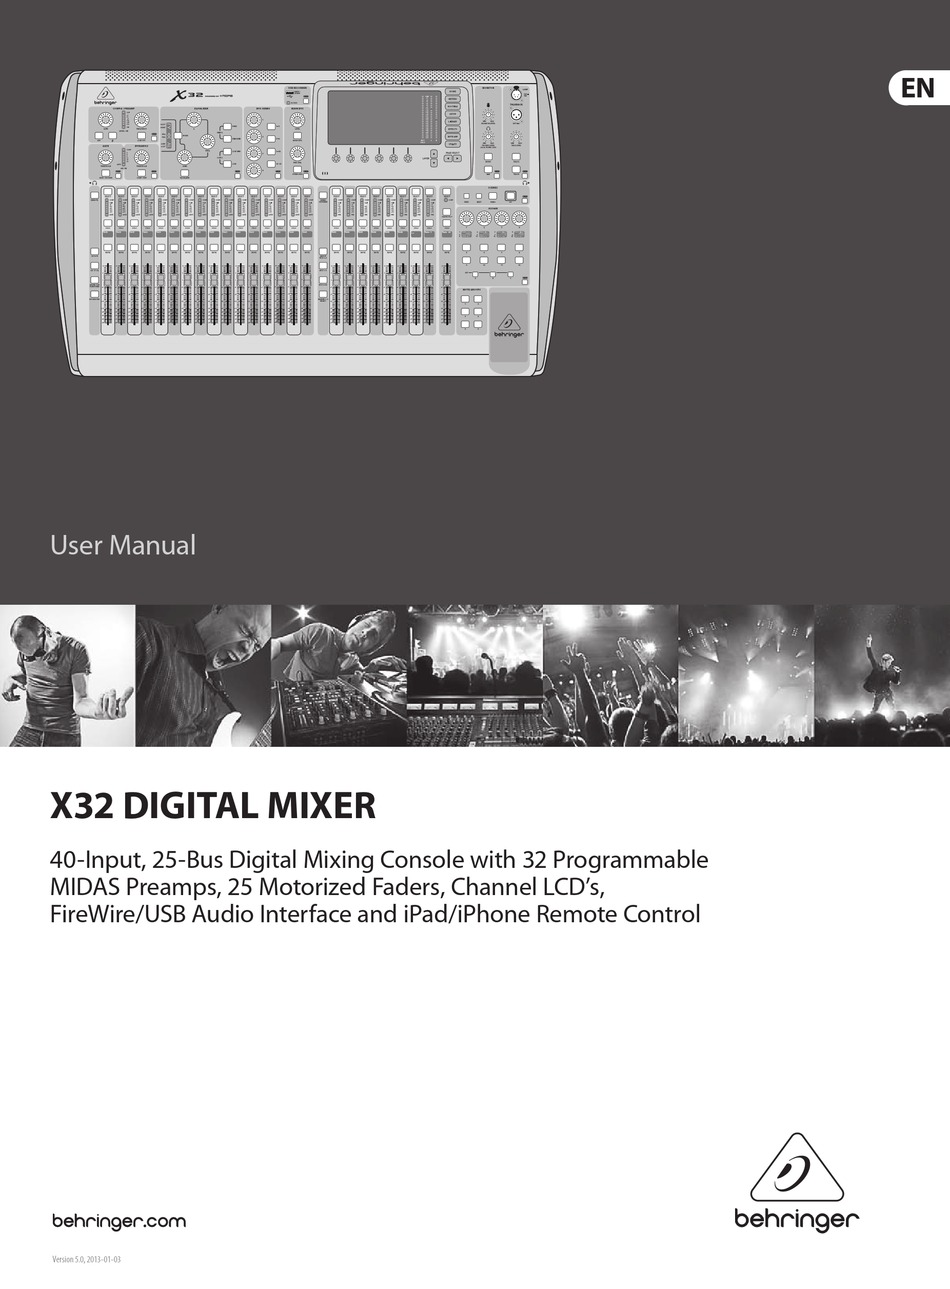 behringer digital mixer x32 manual